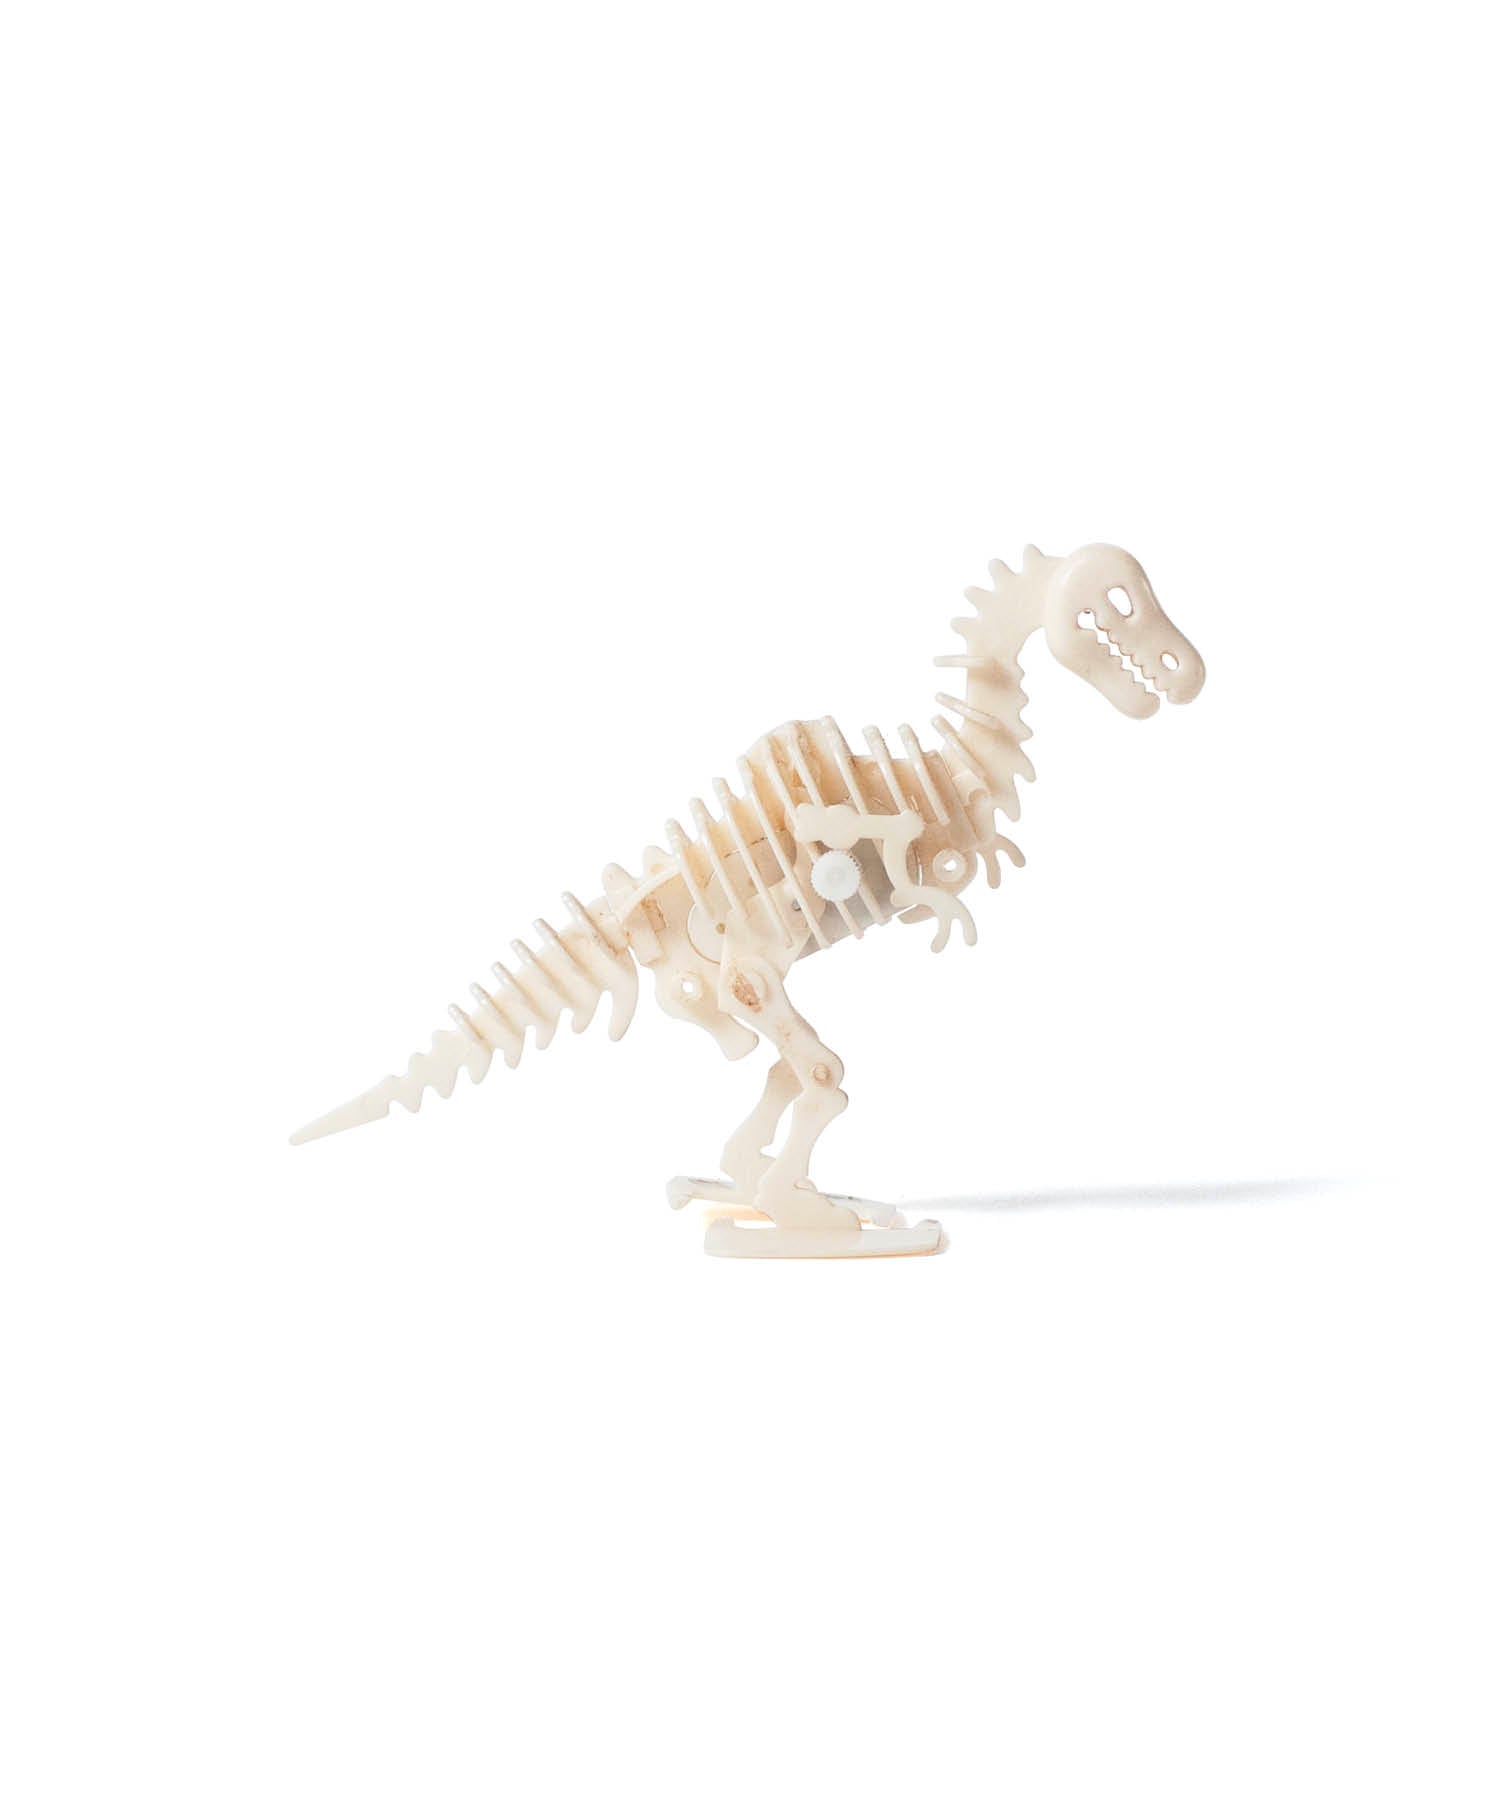 Vintage Object : ティラノサウルスの骨のおもちゃ | LIKE THIS SHOP